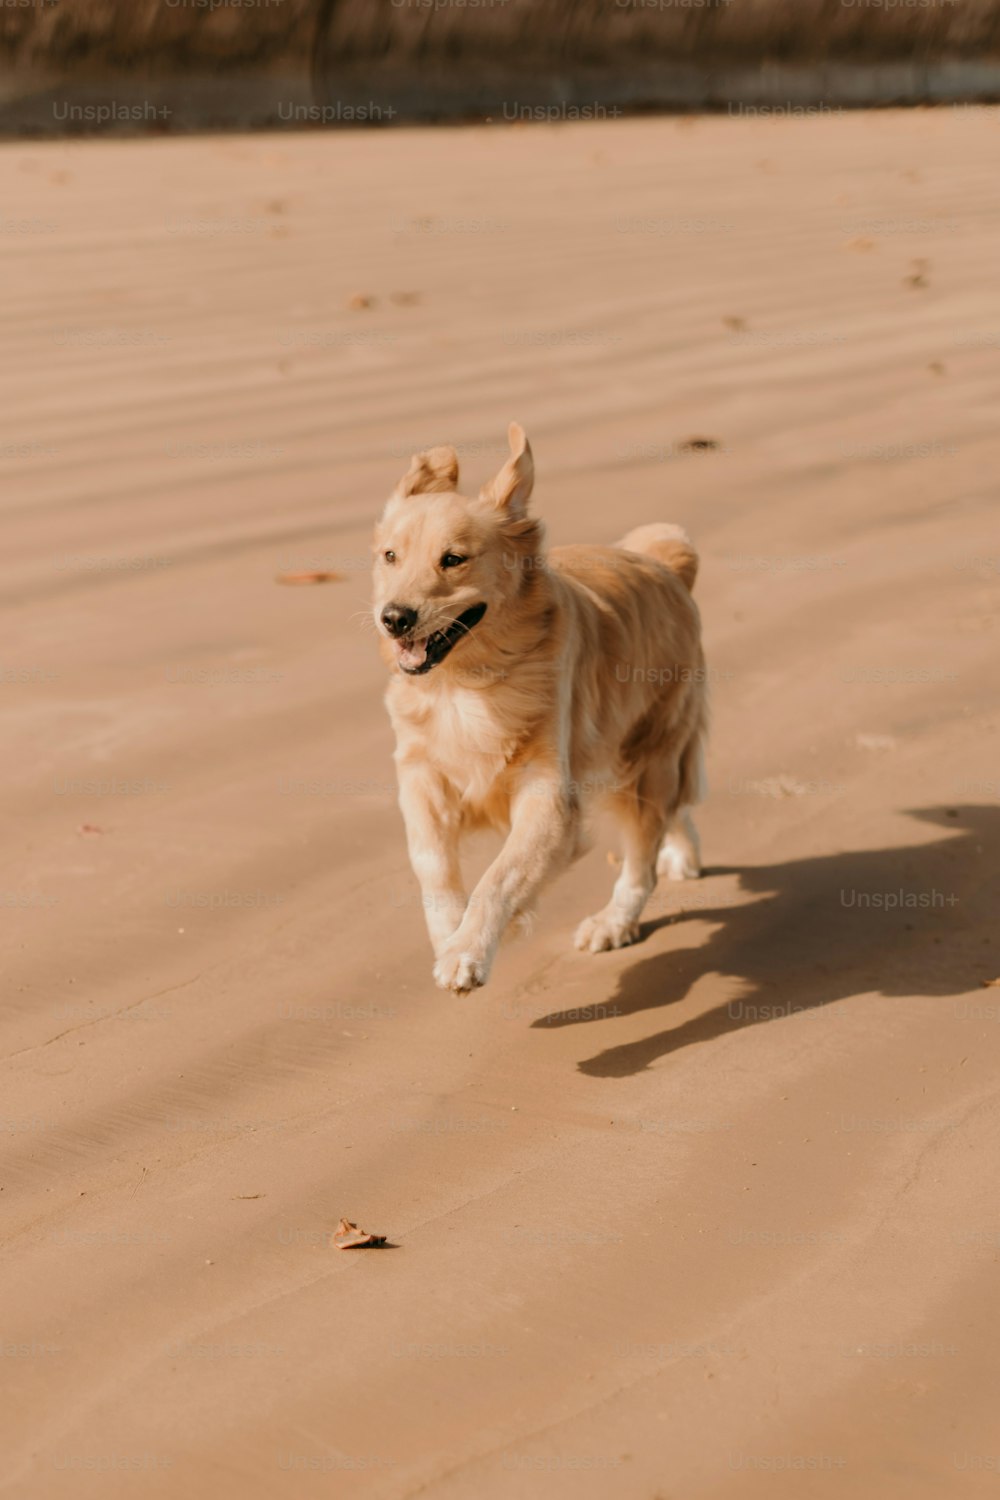 a dog running across a sandy beach